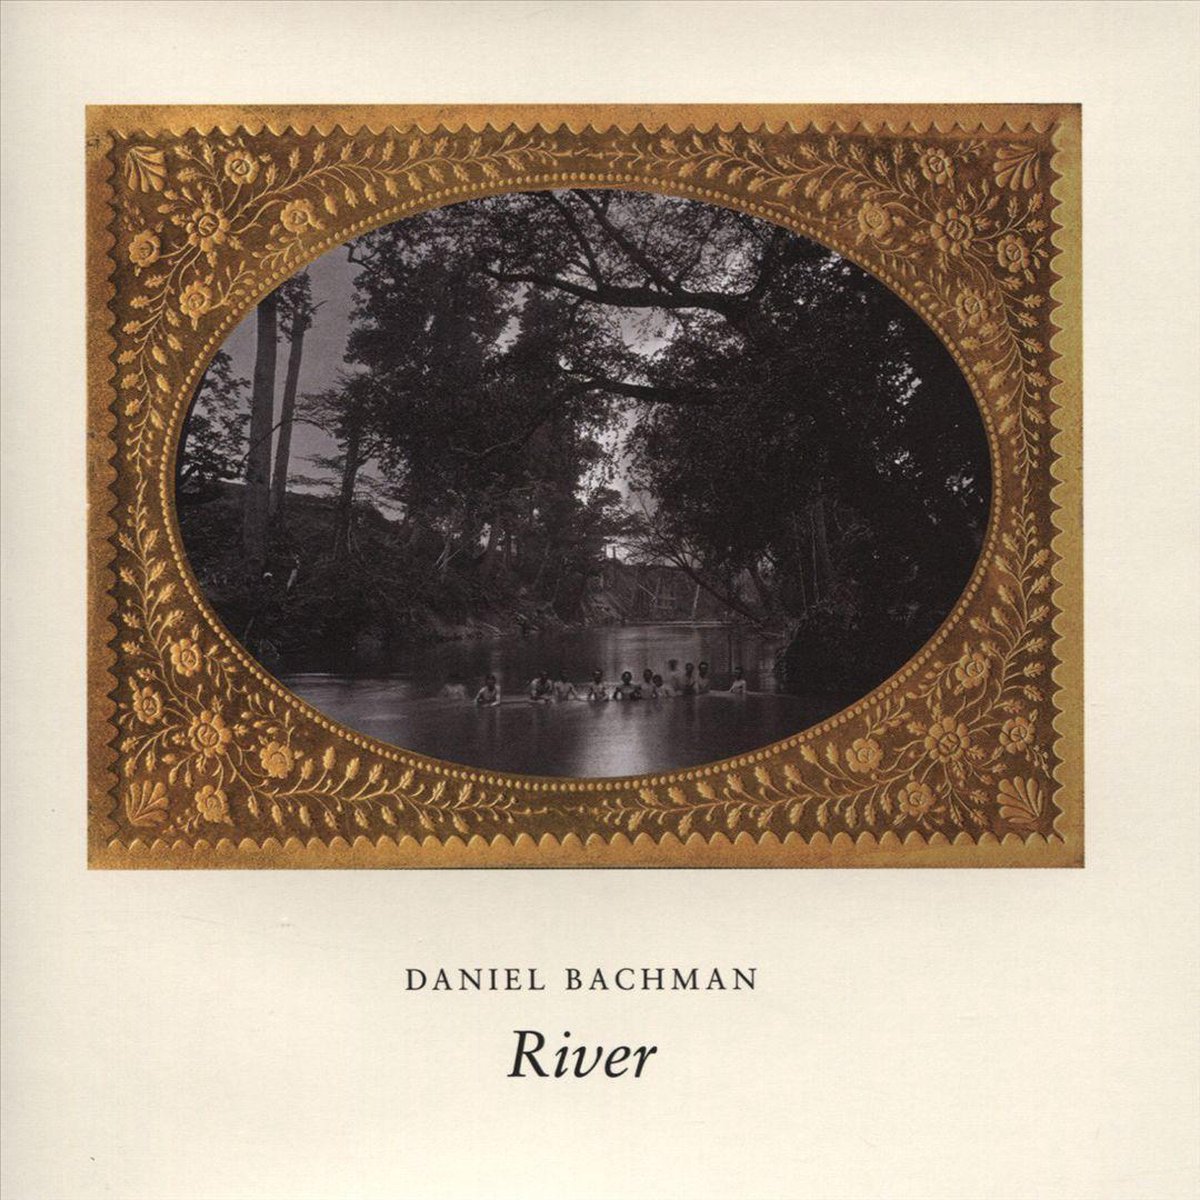 Daniel Bachman - River |  Vinyl LP | Daniel Bachman - River (LP) | Records on Vinyl